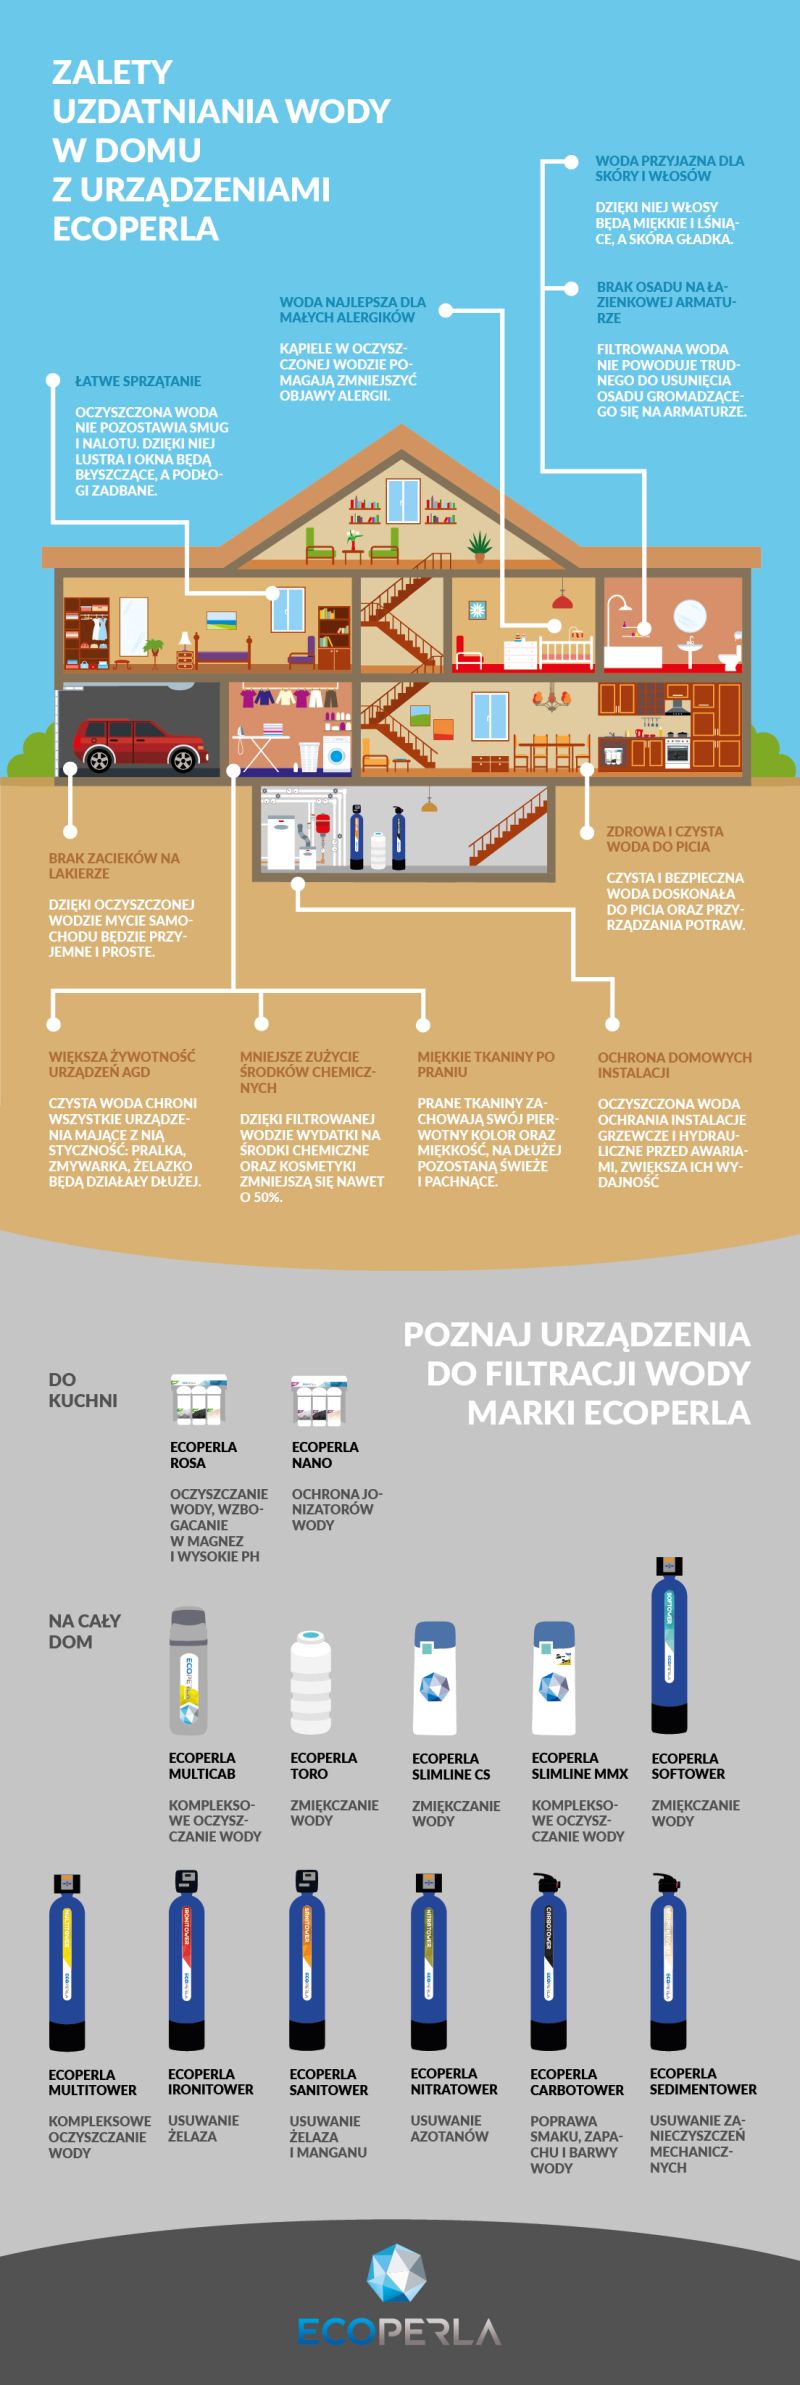 Zalety uzdatniania wody z polską marką Ecoperla - infografika